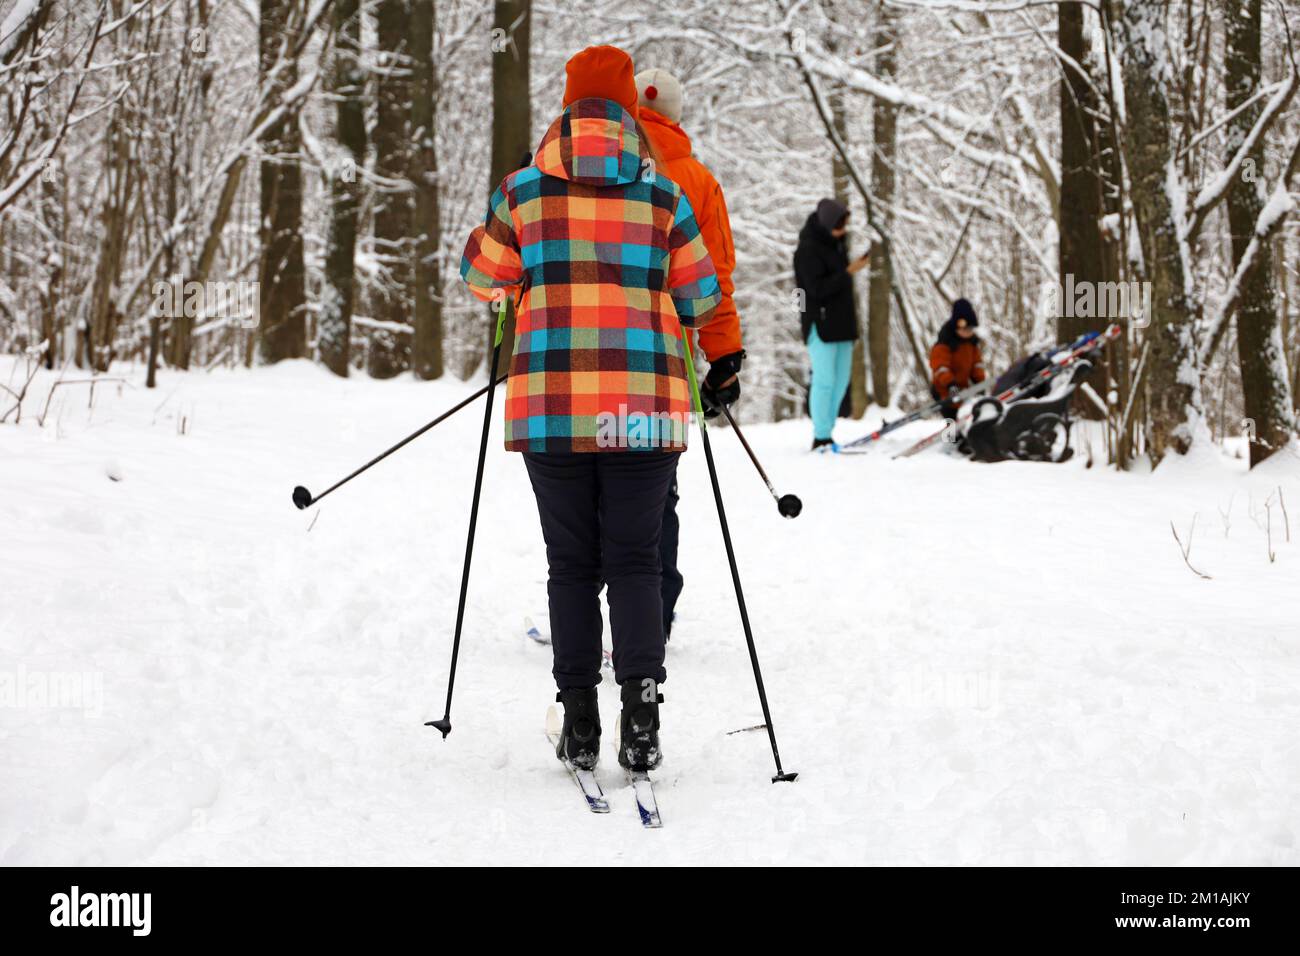 Personnes ski, détente en famille à l'extérieur. Filles et hommes skieurs marchant sur la neige en forêt d'hiver Banque D'Images